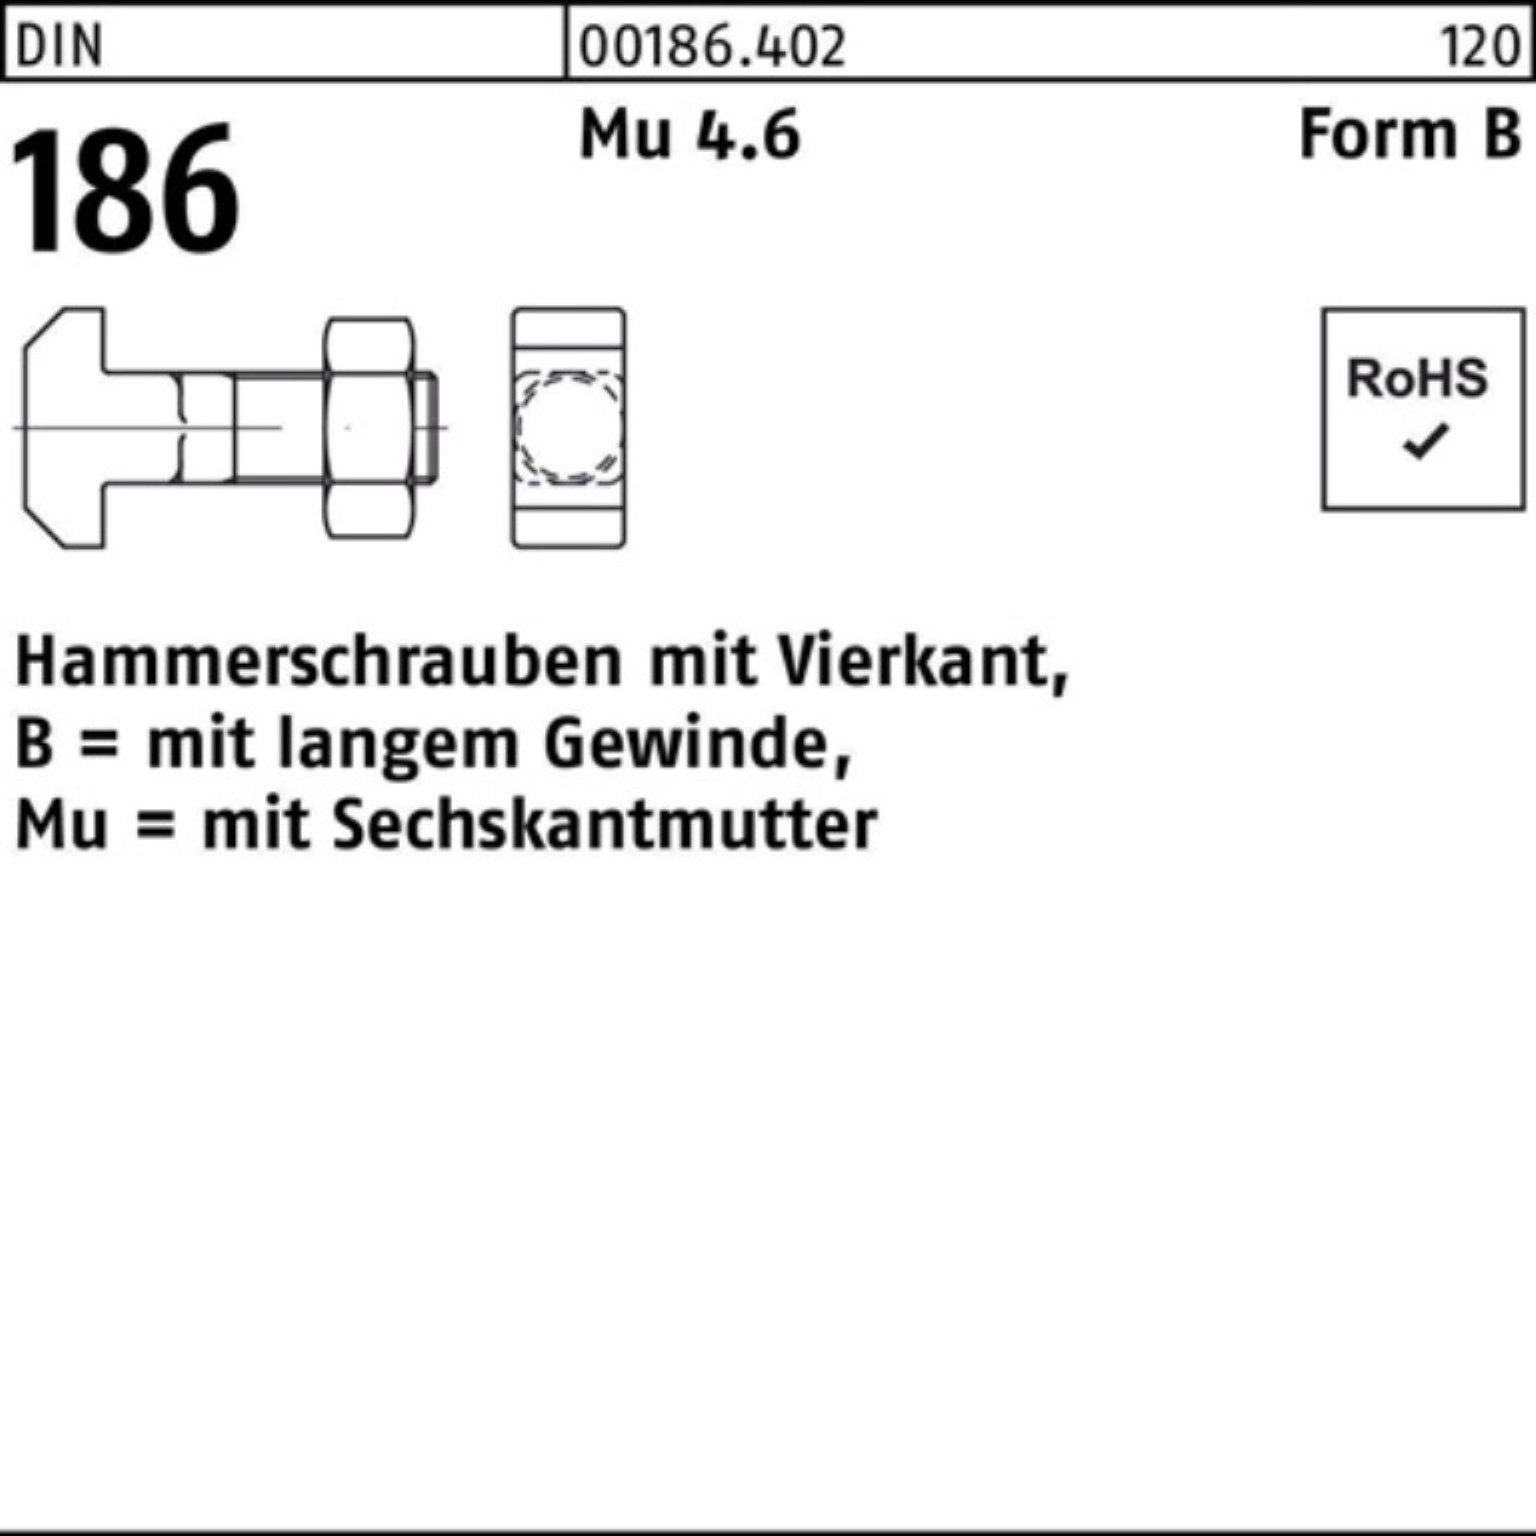 6x FormB 45 Hammerschraube Schraube M 6-ktmutter BM 186 Pack Reyher 100er DIN Vierkant